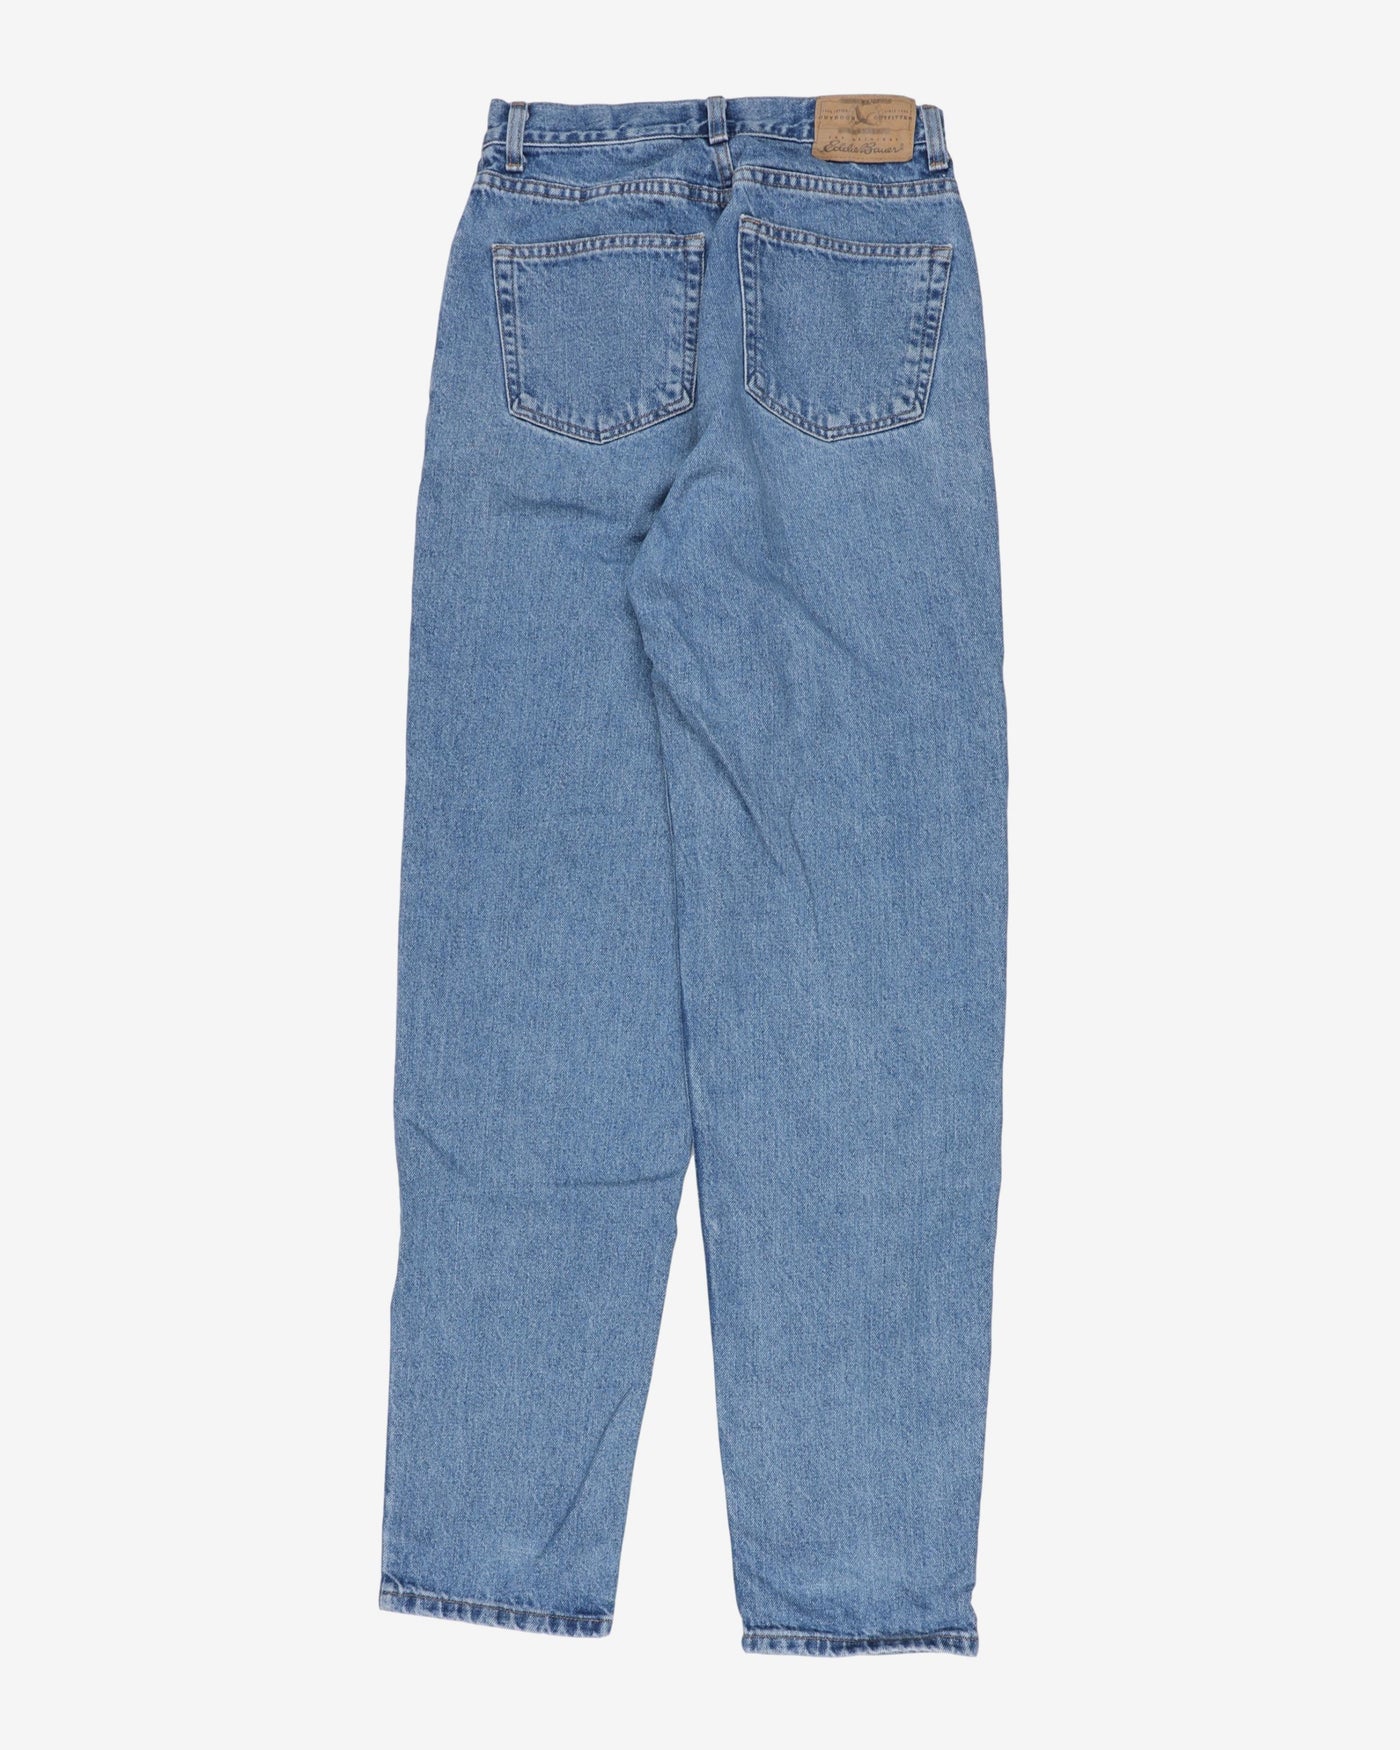 Vintage Eddie Bauer high waist jeans - W26 L33